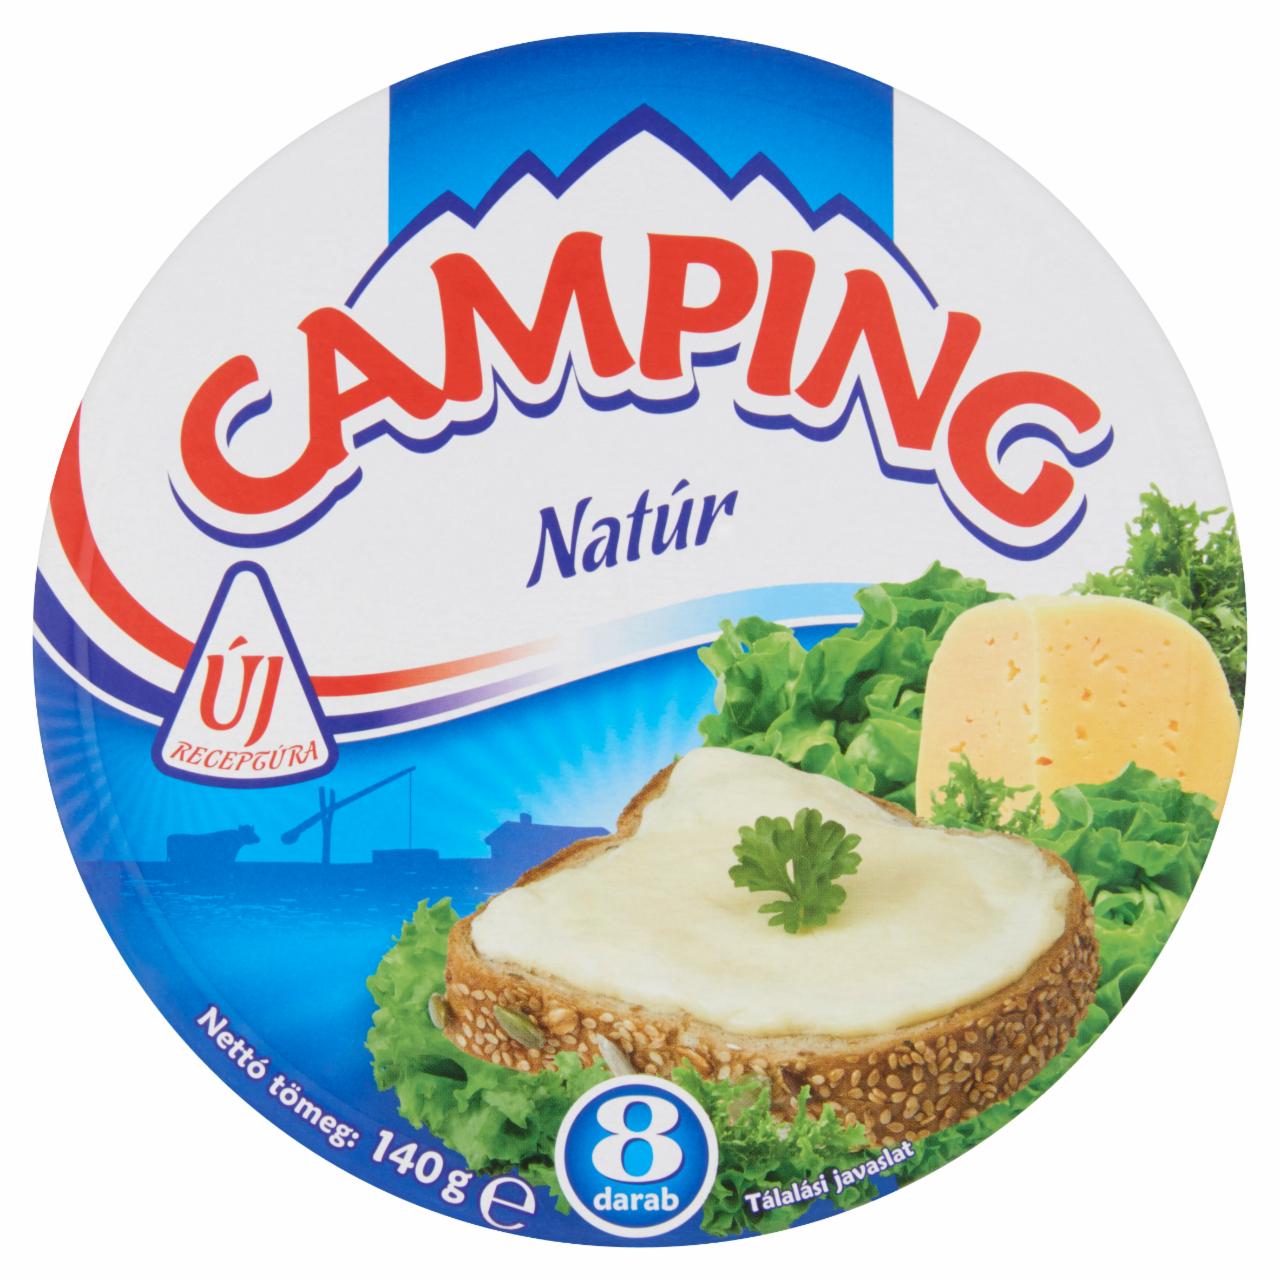 Képek - Camping natúr kenhető, zsírdús ömlesztett sajt 8 db 140 g